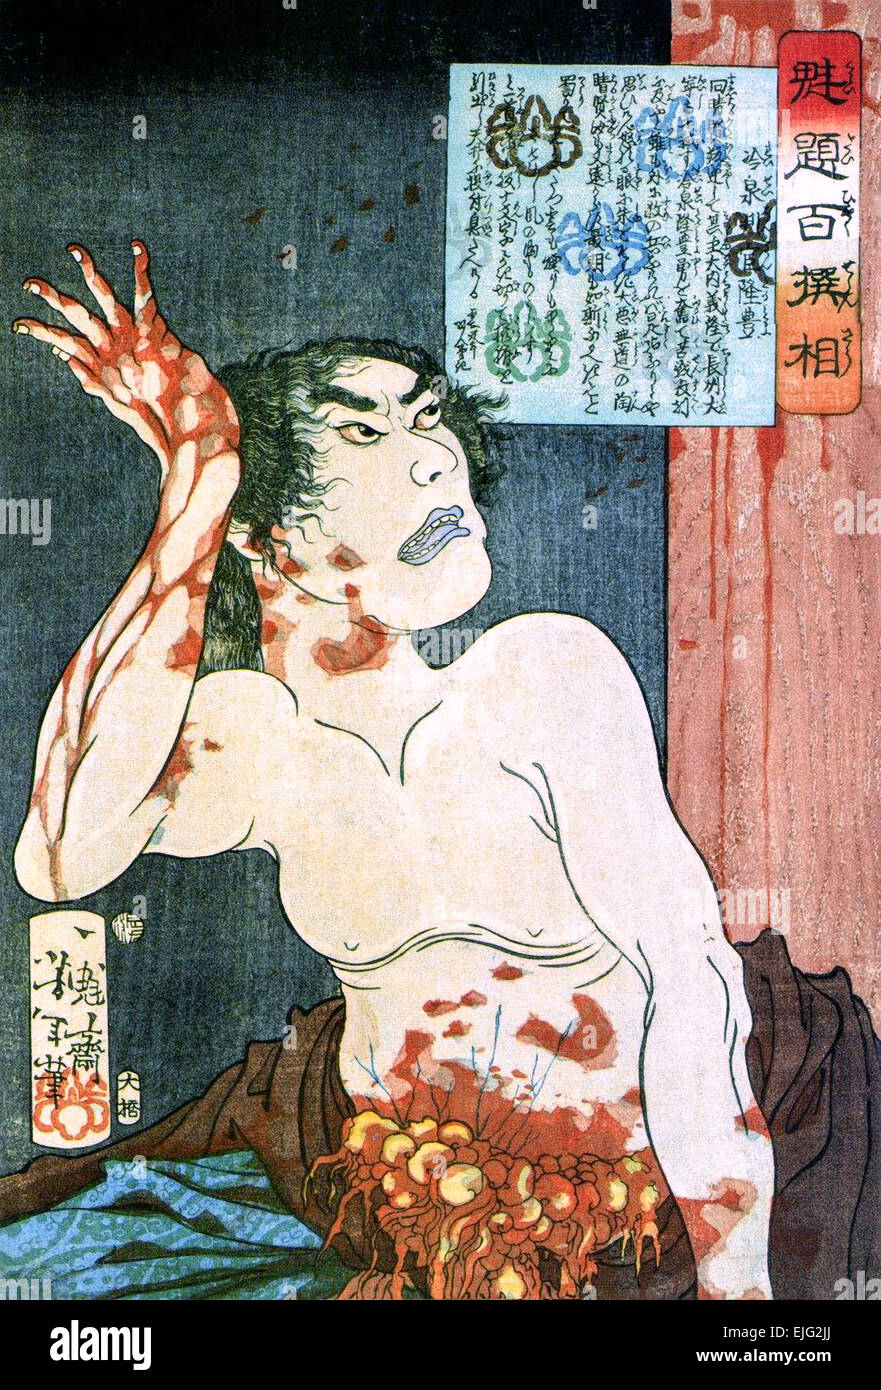 Samurai commiting Seppuku (Hara kiri) woodblock hand coloured print from 'One Hundred Warriors' by Tsukioka Yoshitoshi (1839-1892). Stock Photo